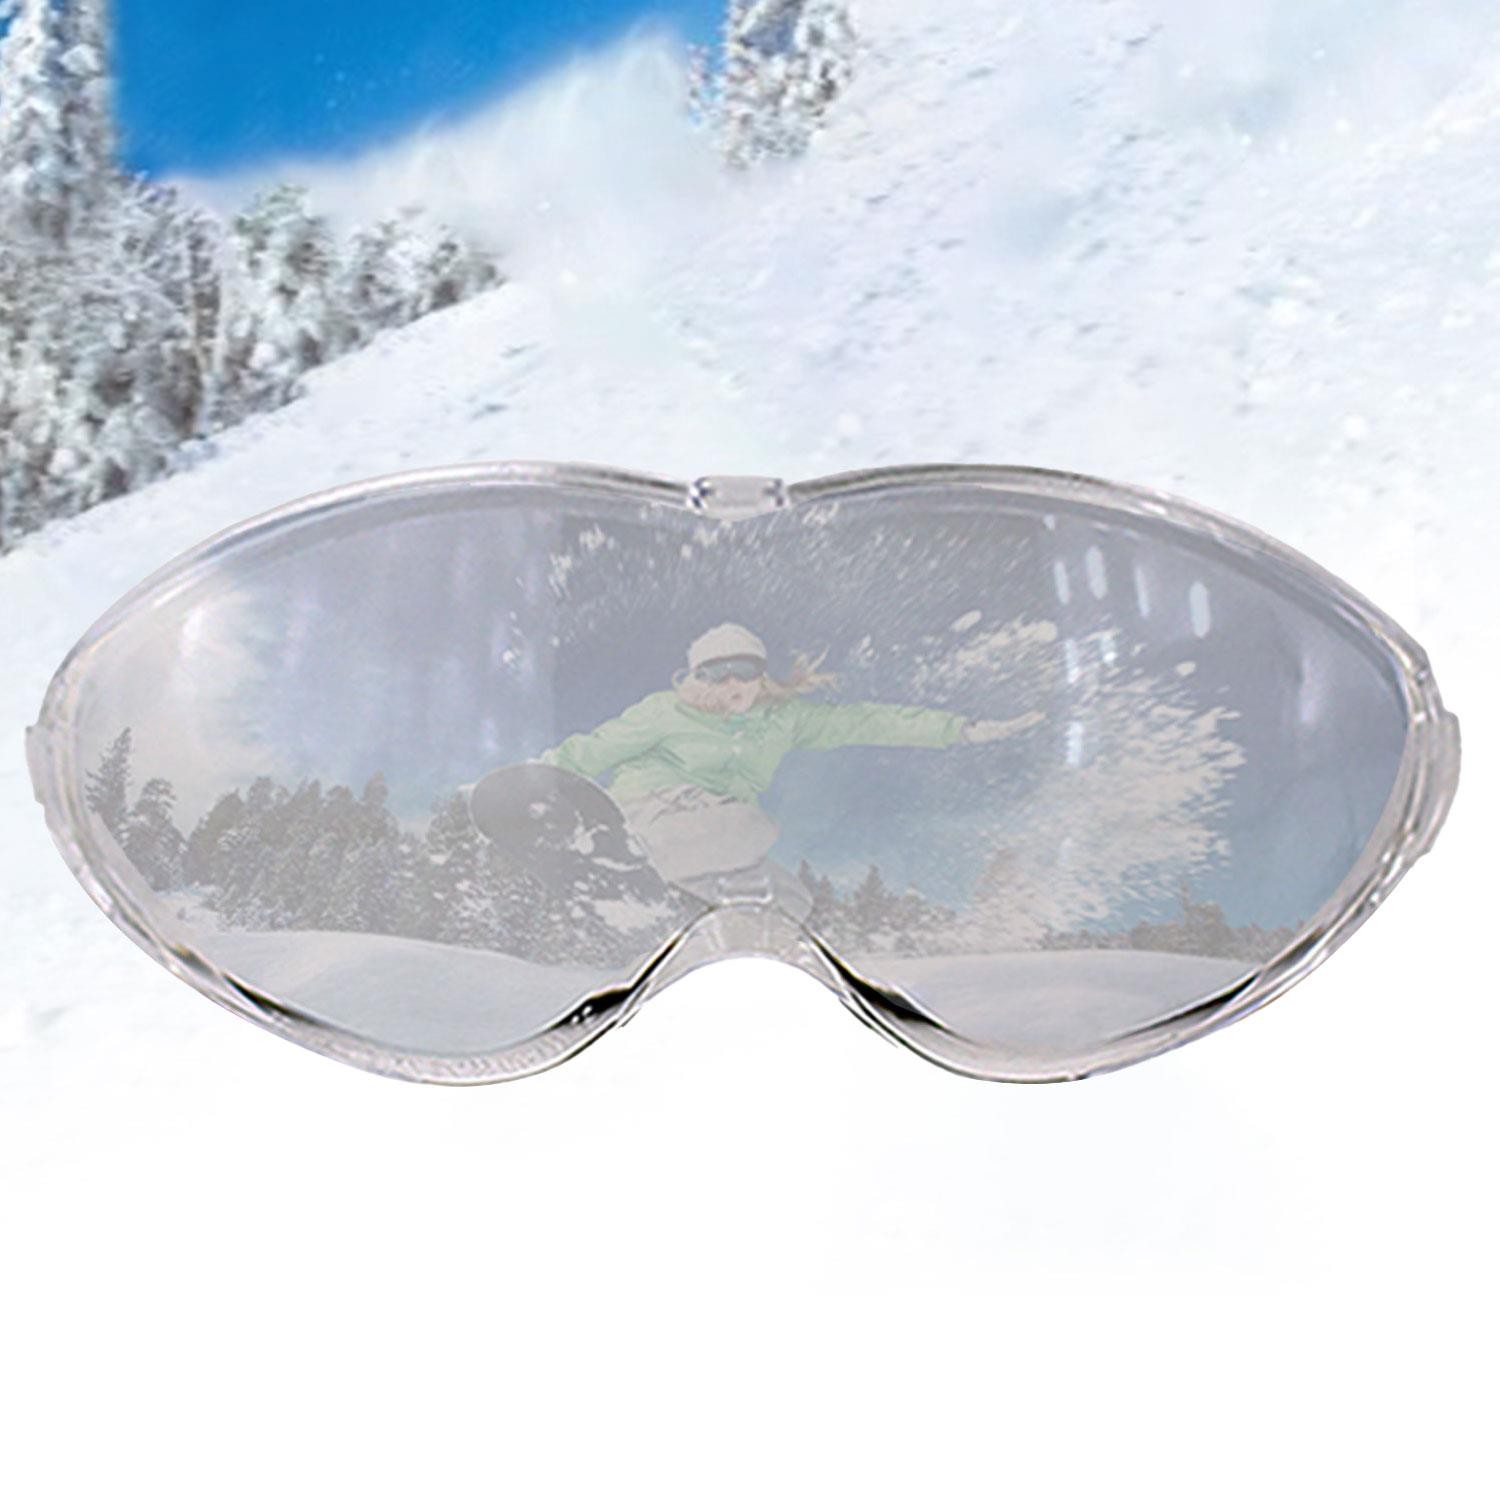 Bellasimo Çerçevesiz Kayak Gözlüğü Camı Lens Değiştirebilir Cam Antifog Güneş Kar Gözlük Camı Şeffaf